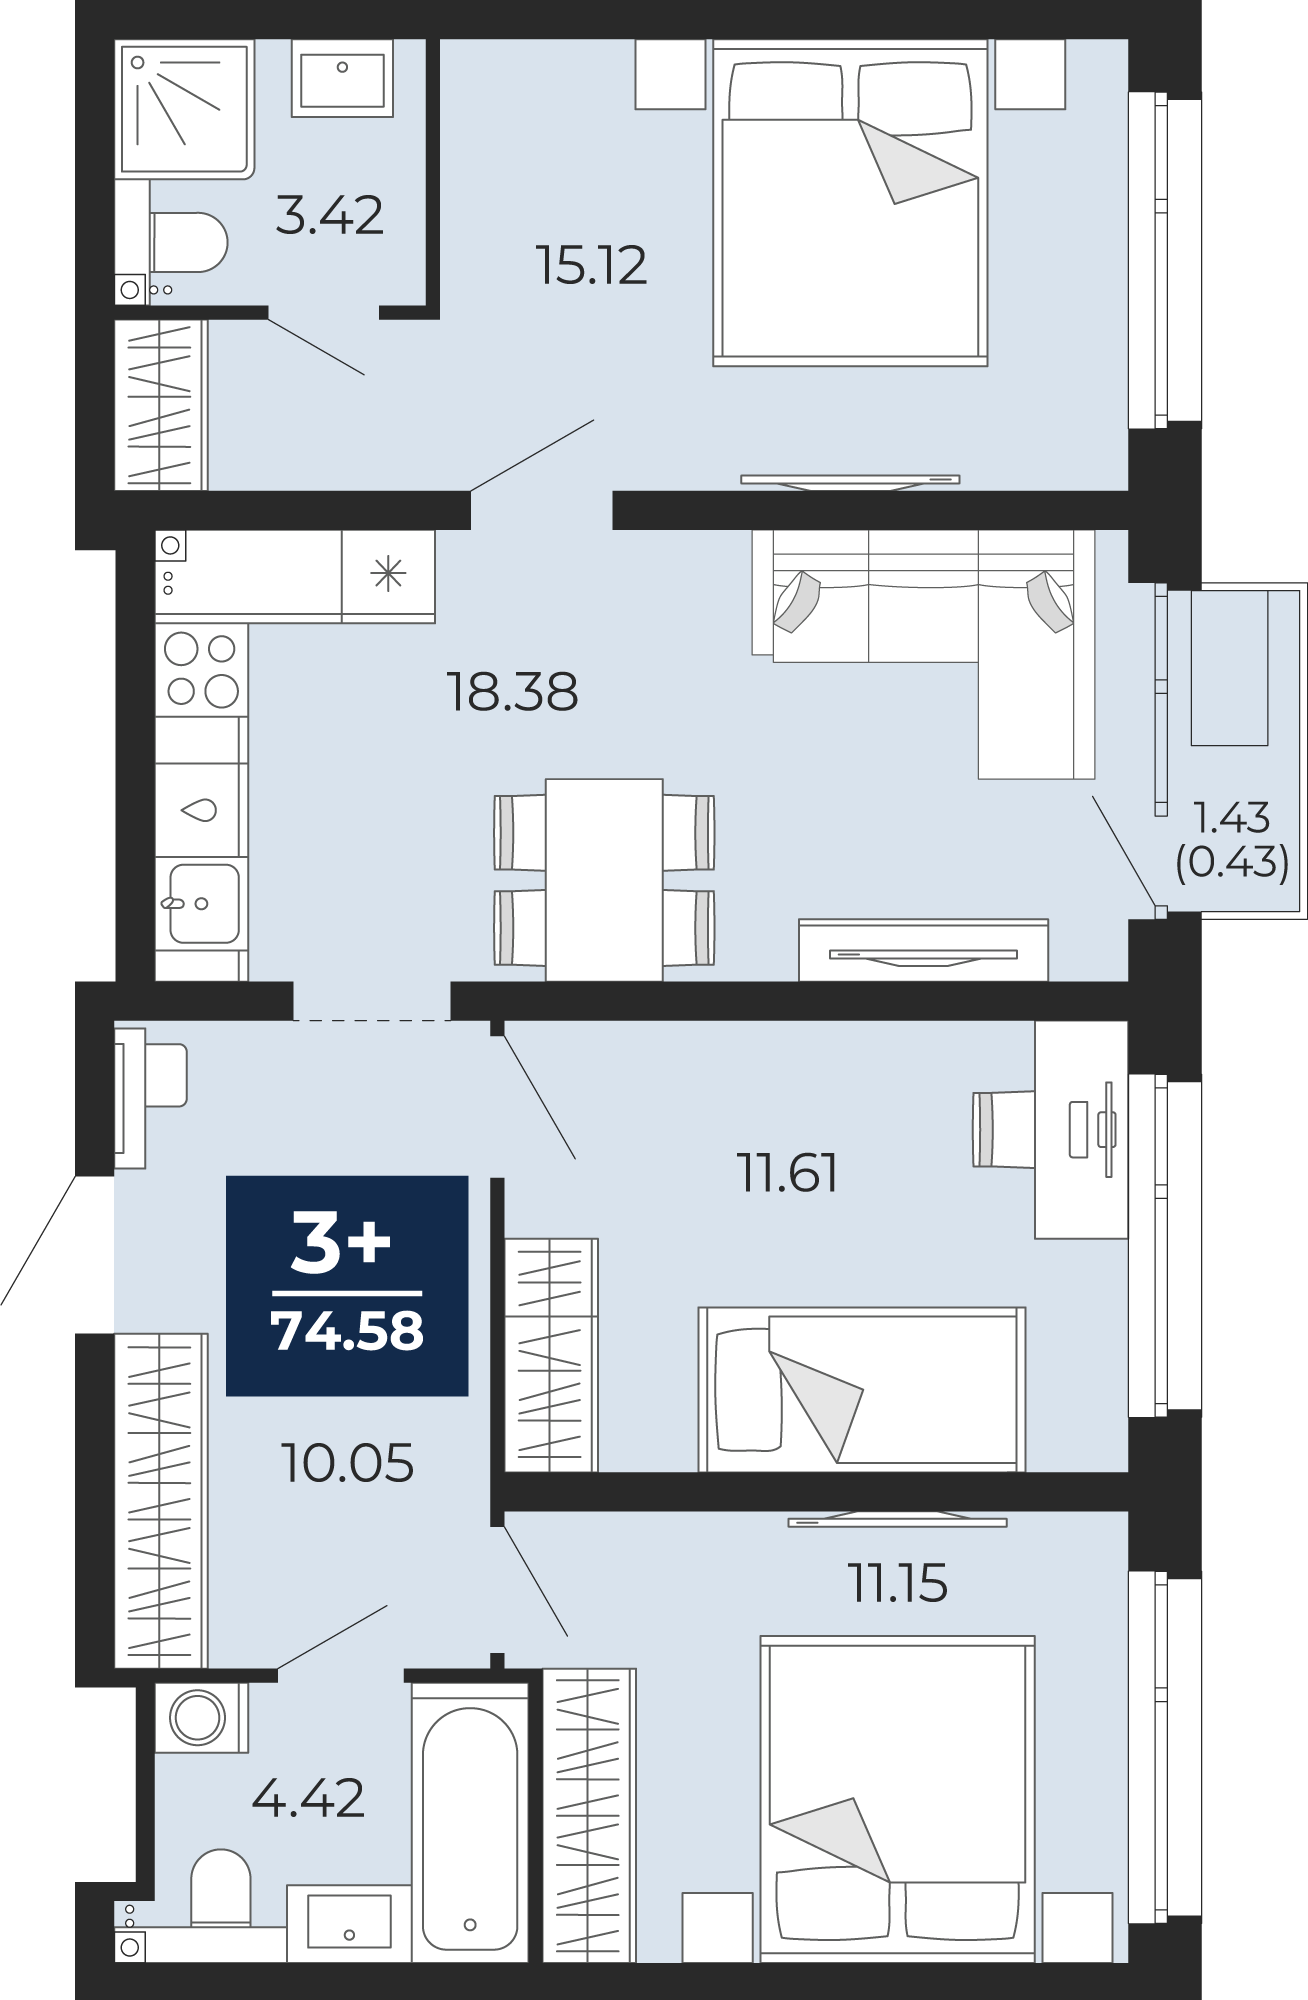 Квартира № 329, 3-комнатная, 74.58 кв. м, 2 этаж